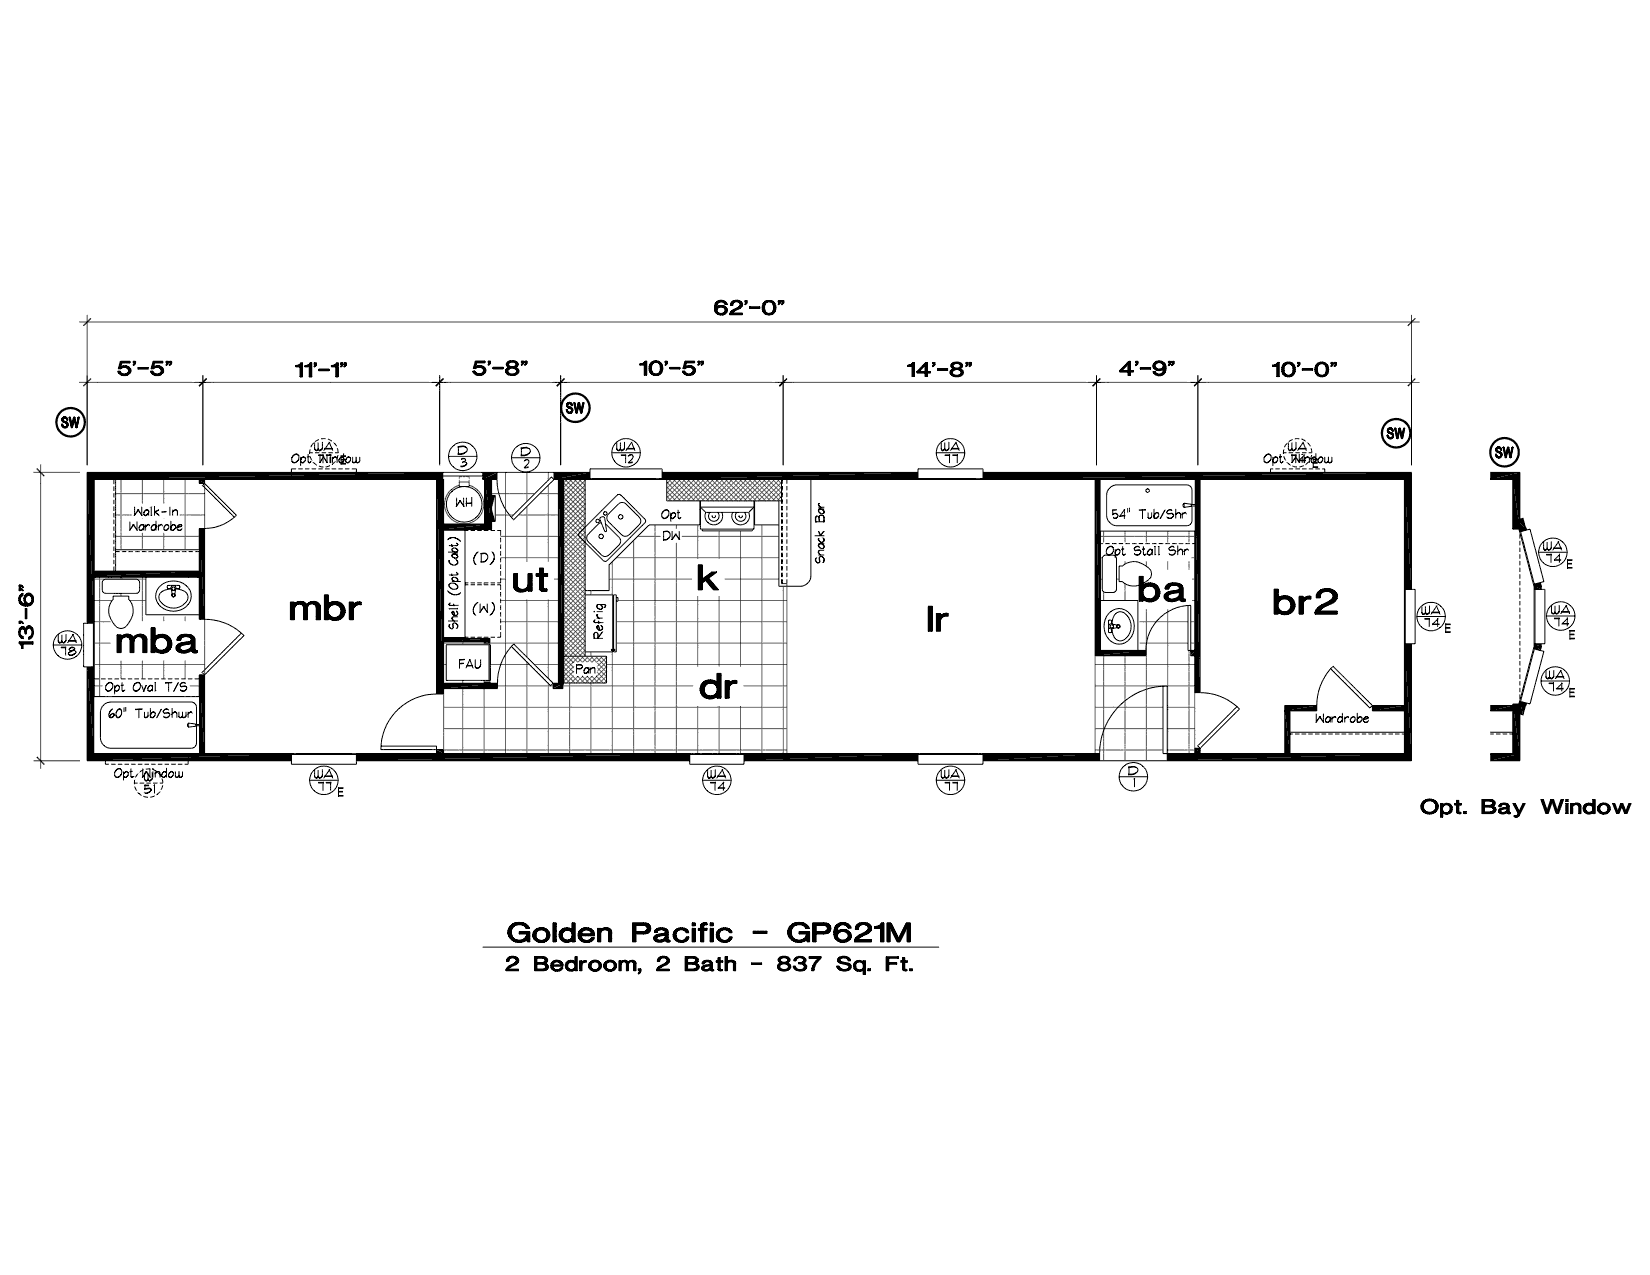 1999 oakwood mobile home floor plans Modern Modular Home